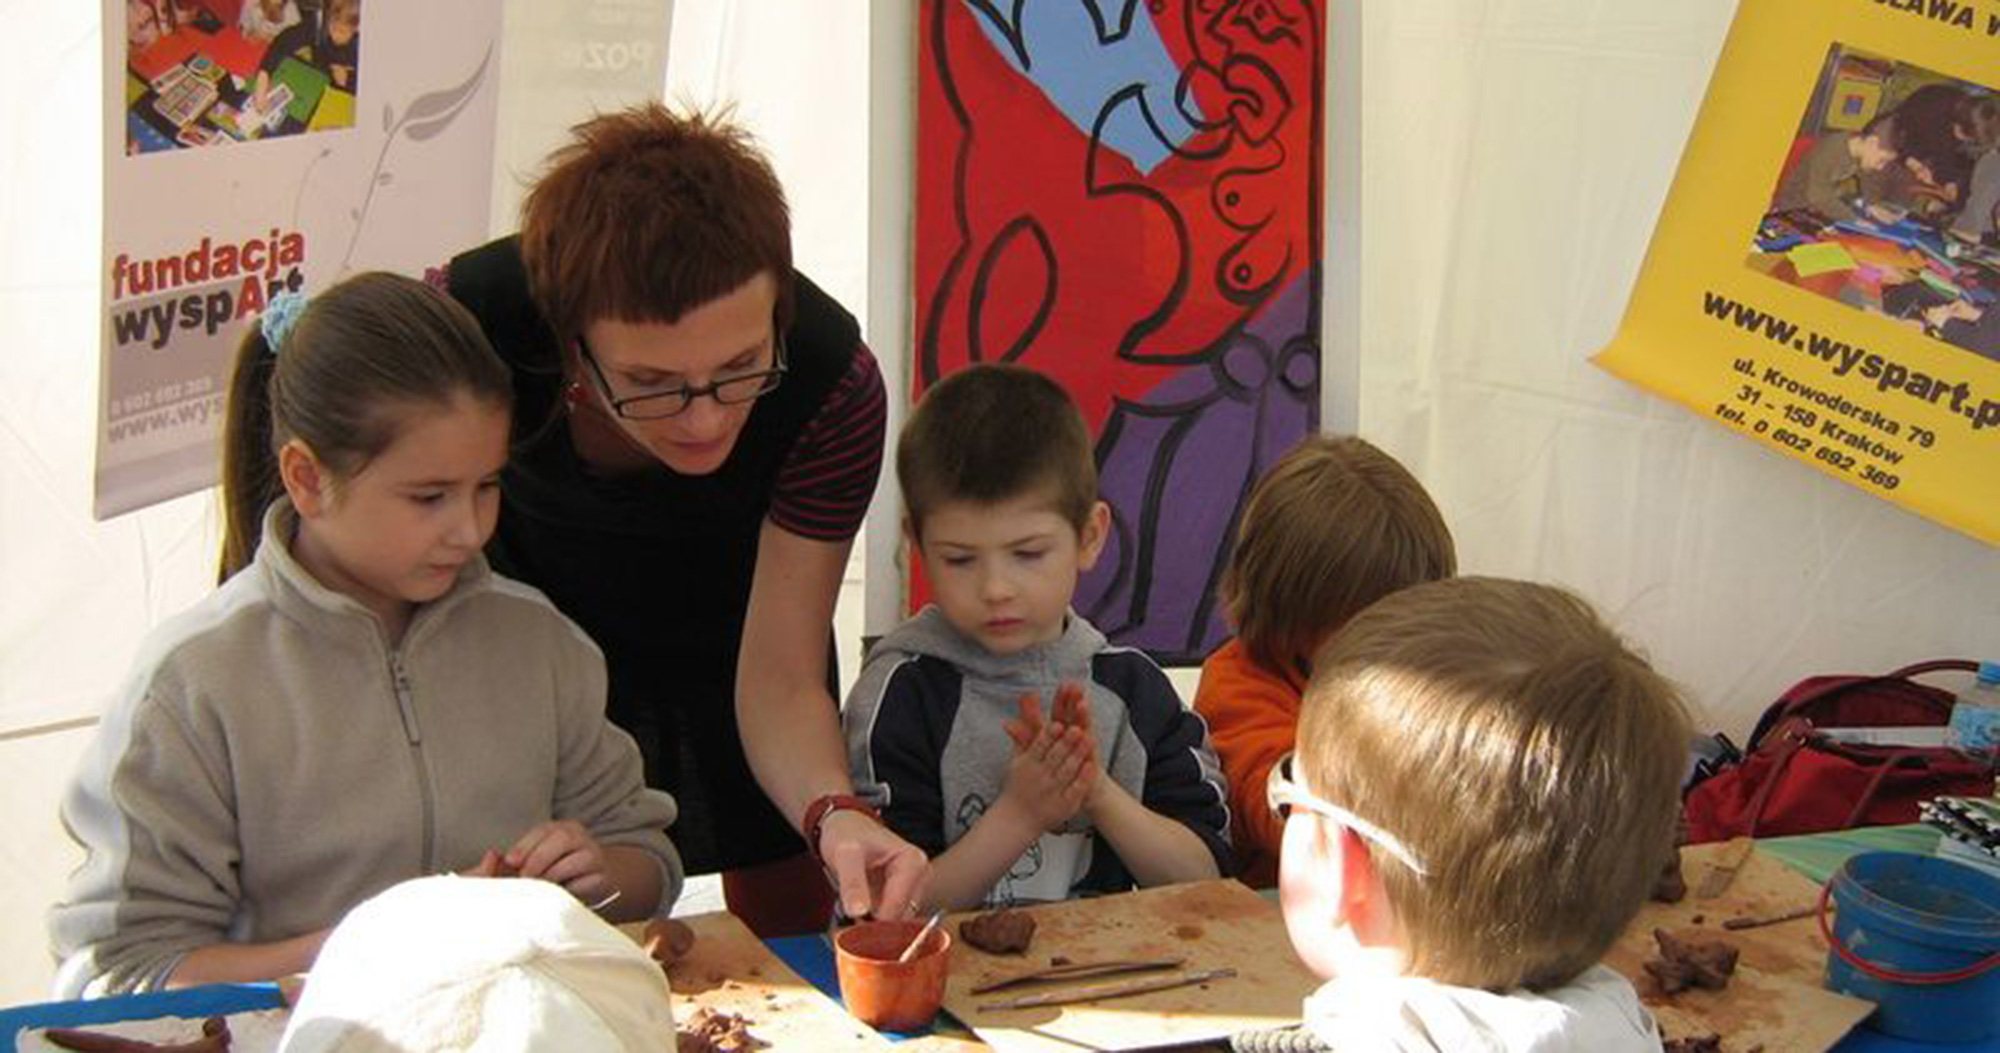 WyspArt Foundation - Spring workshops for children